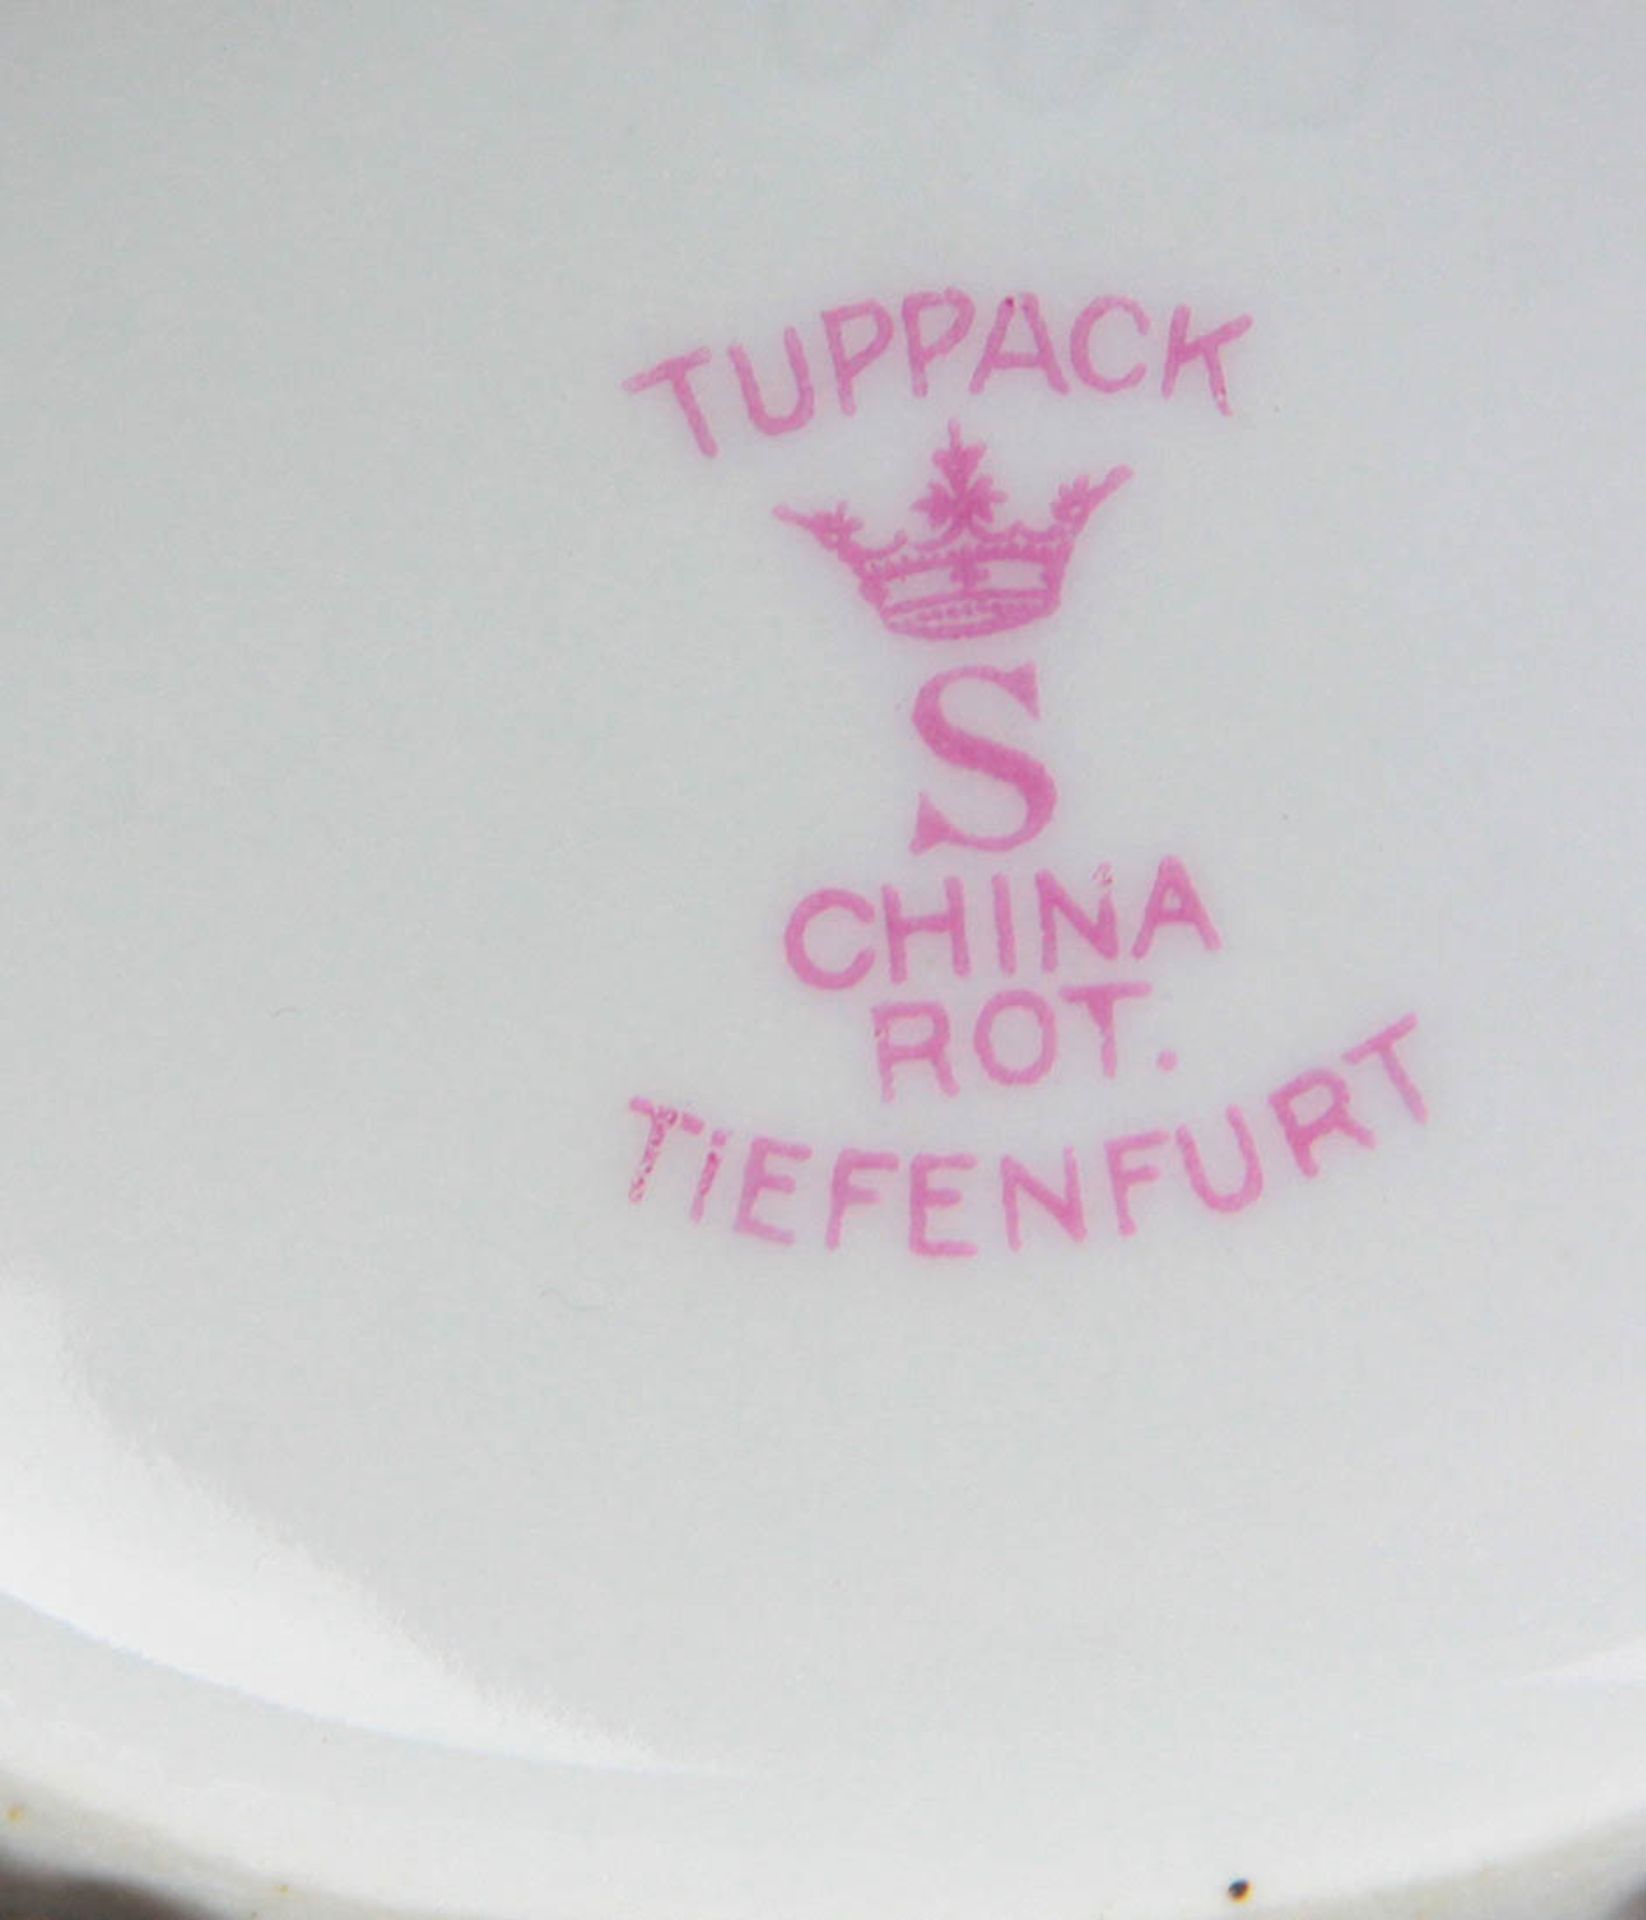 Kaffeeservice *China rot*weiß glasiertes Porzellan mit Manufakturmarke Tuppack China rot Tiefenfurt, - Bild 4 aus 4